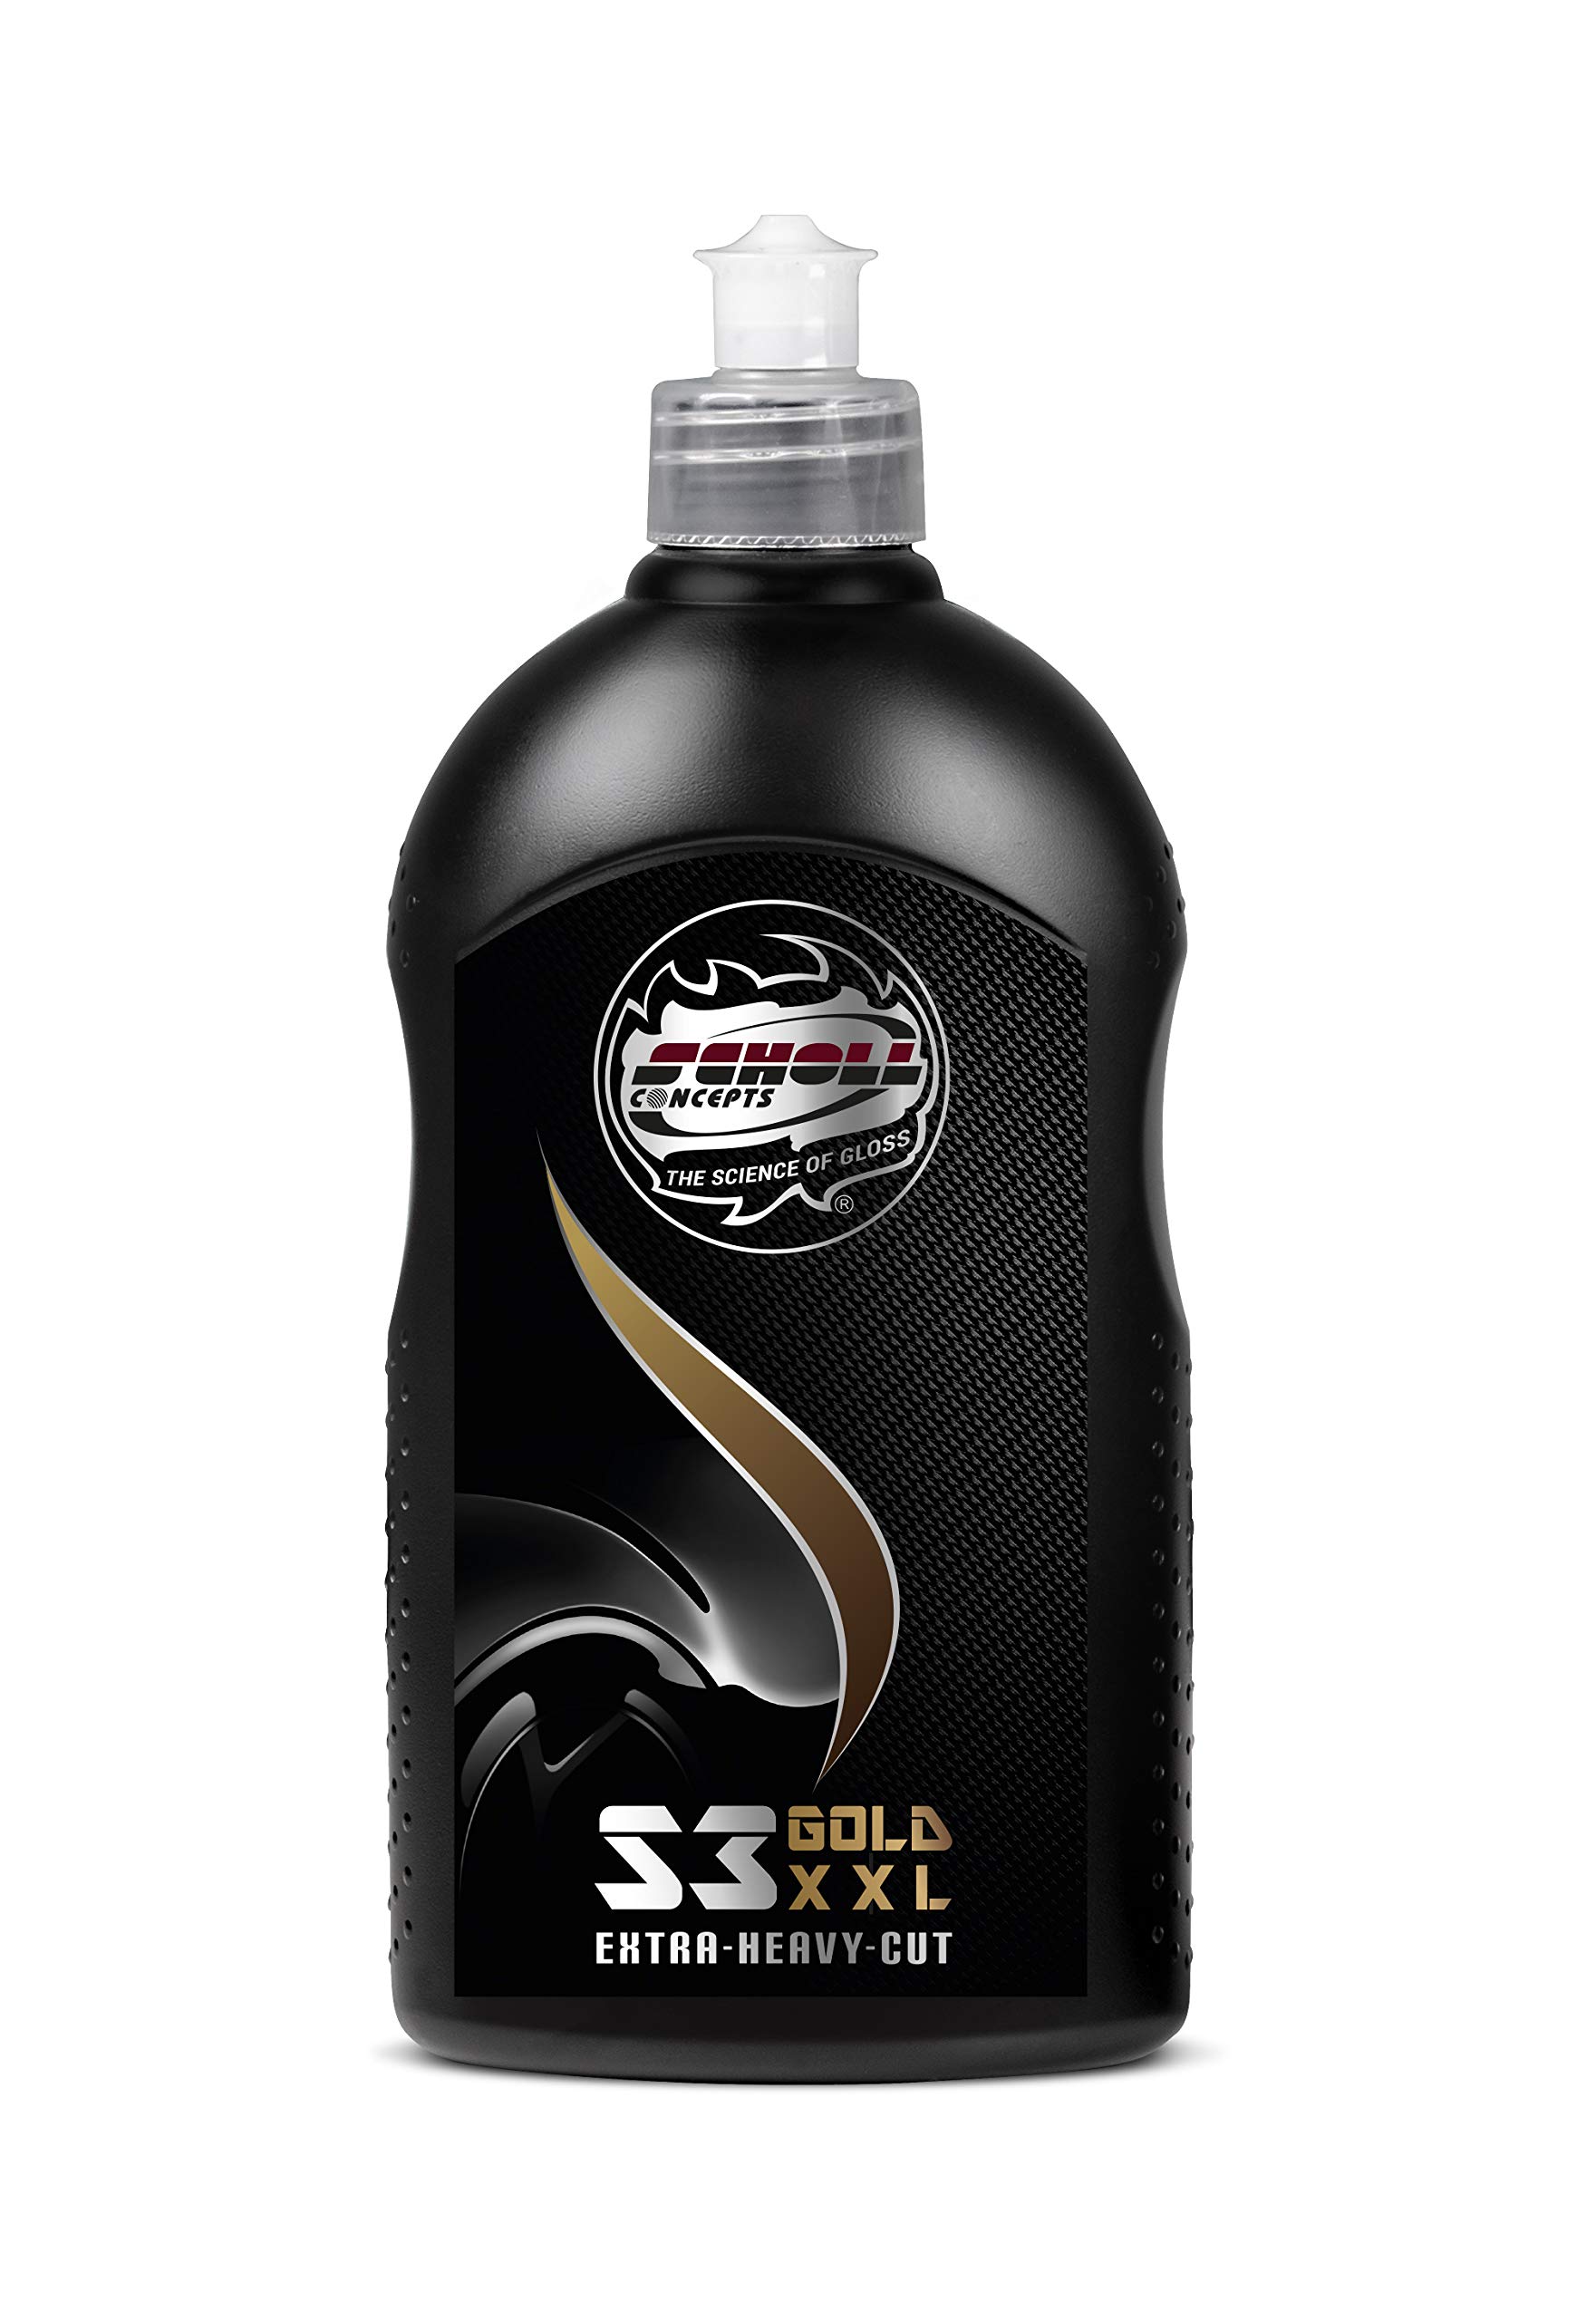 Scholl Concepts S3 Gold XXL Extra-Heavy-Cut | 500g | Hochleistungs-Schleifpaste | Enorme Abtragsleistung | Brillianter Spiegelglanz | Einfaches Handling von Scholl Concepts